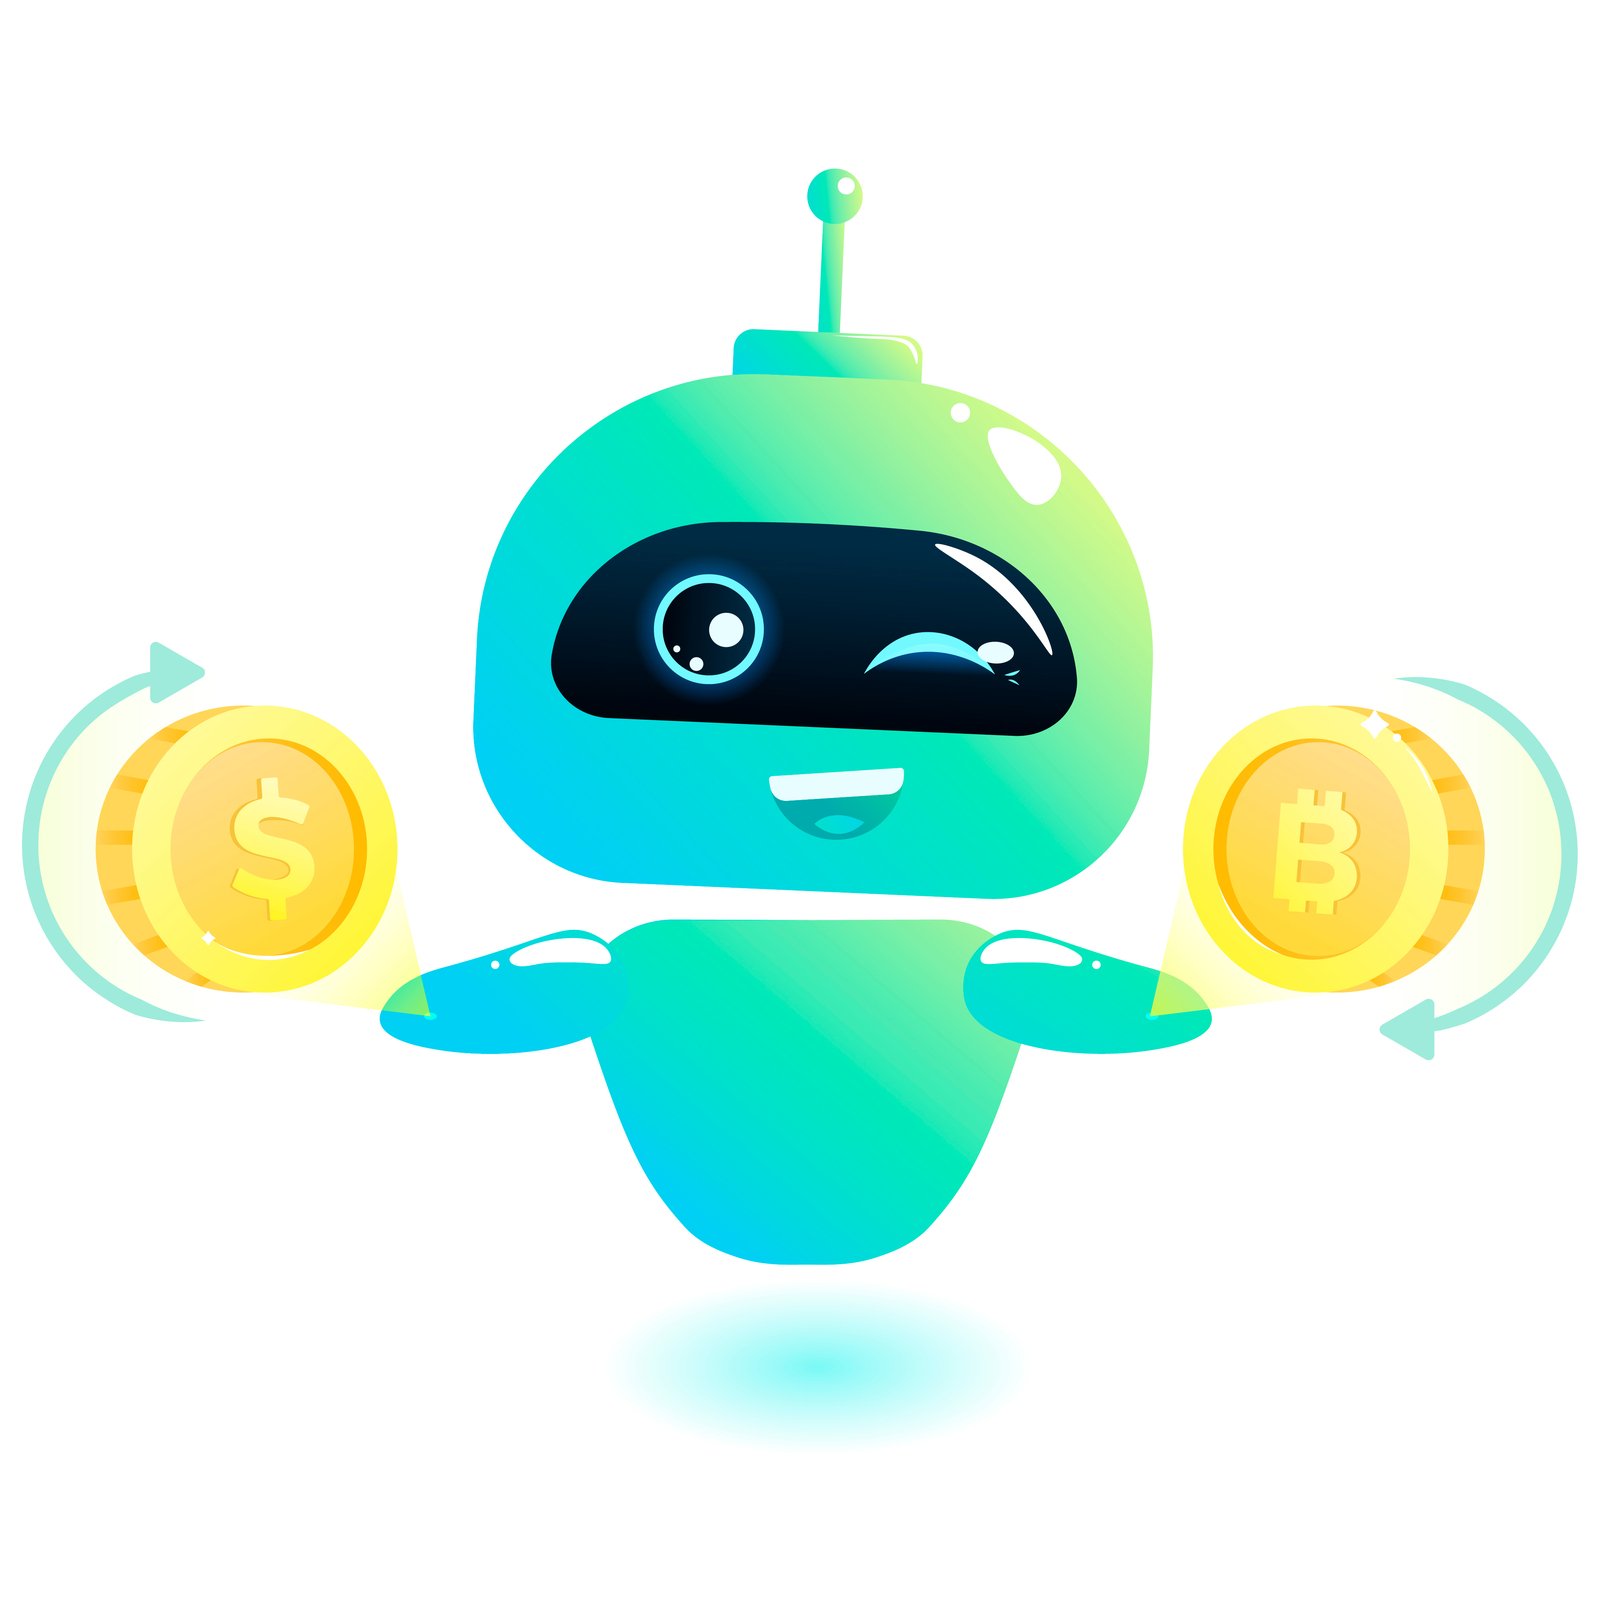 robot bitcoin)